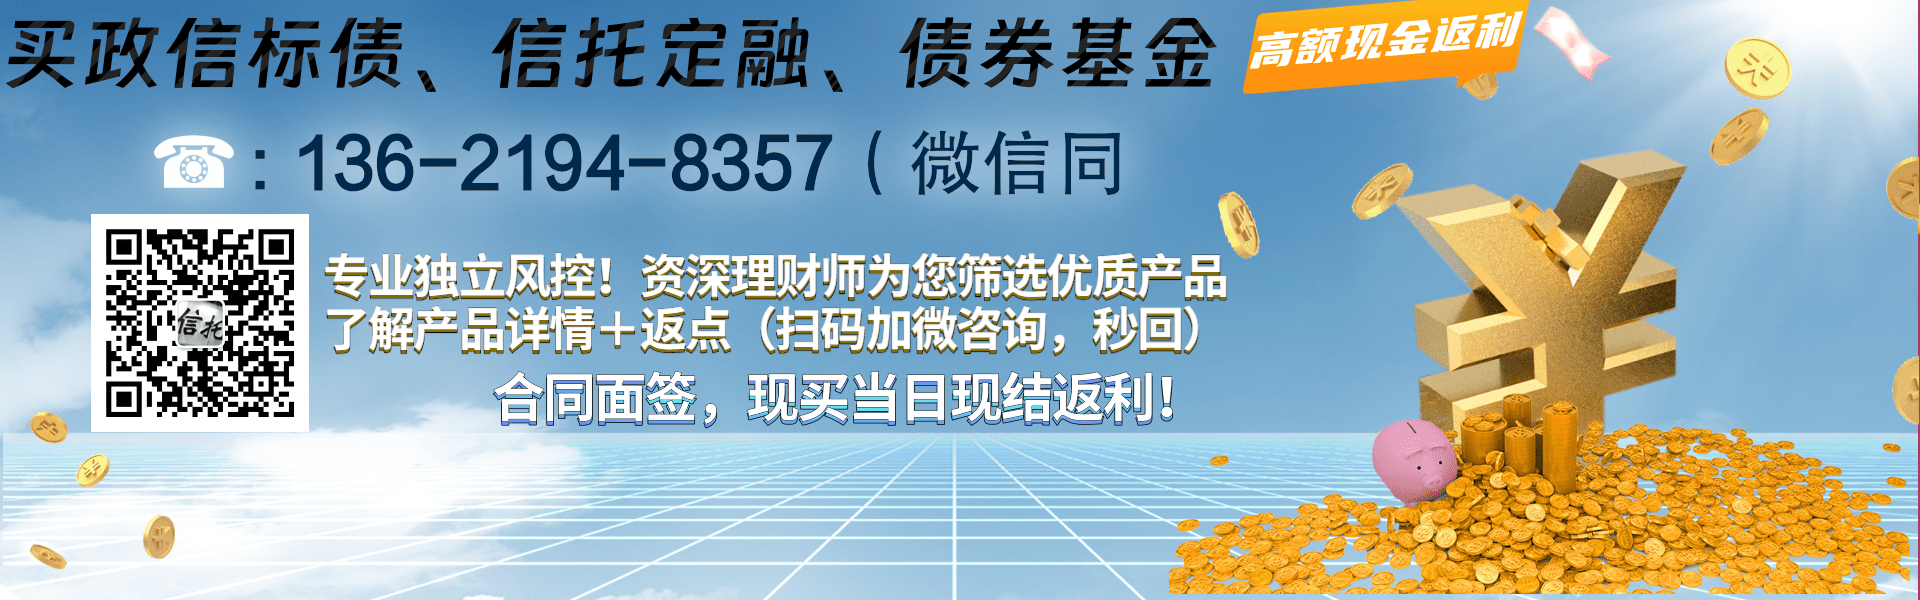 大业信托-48号湖南郴州AA+市级标债集合资金信托计划